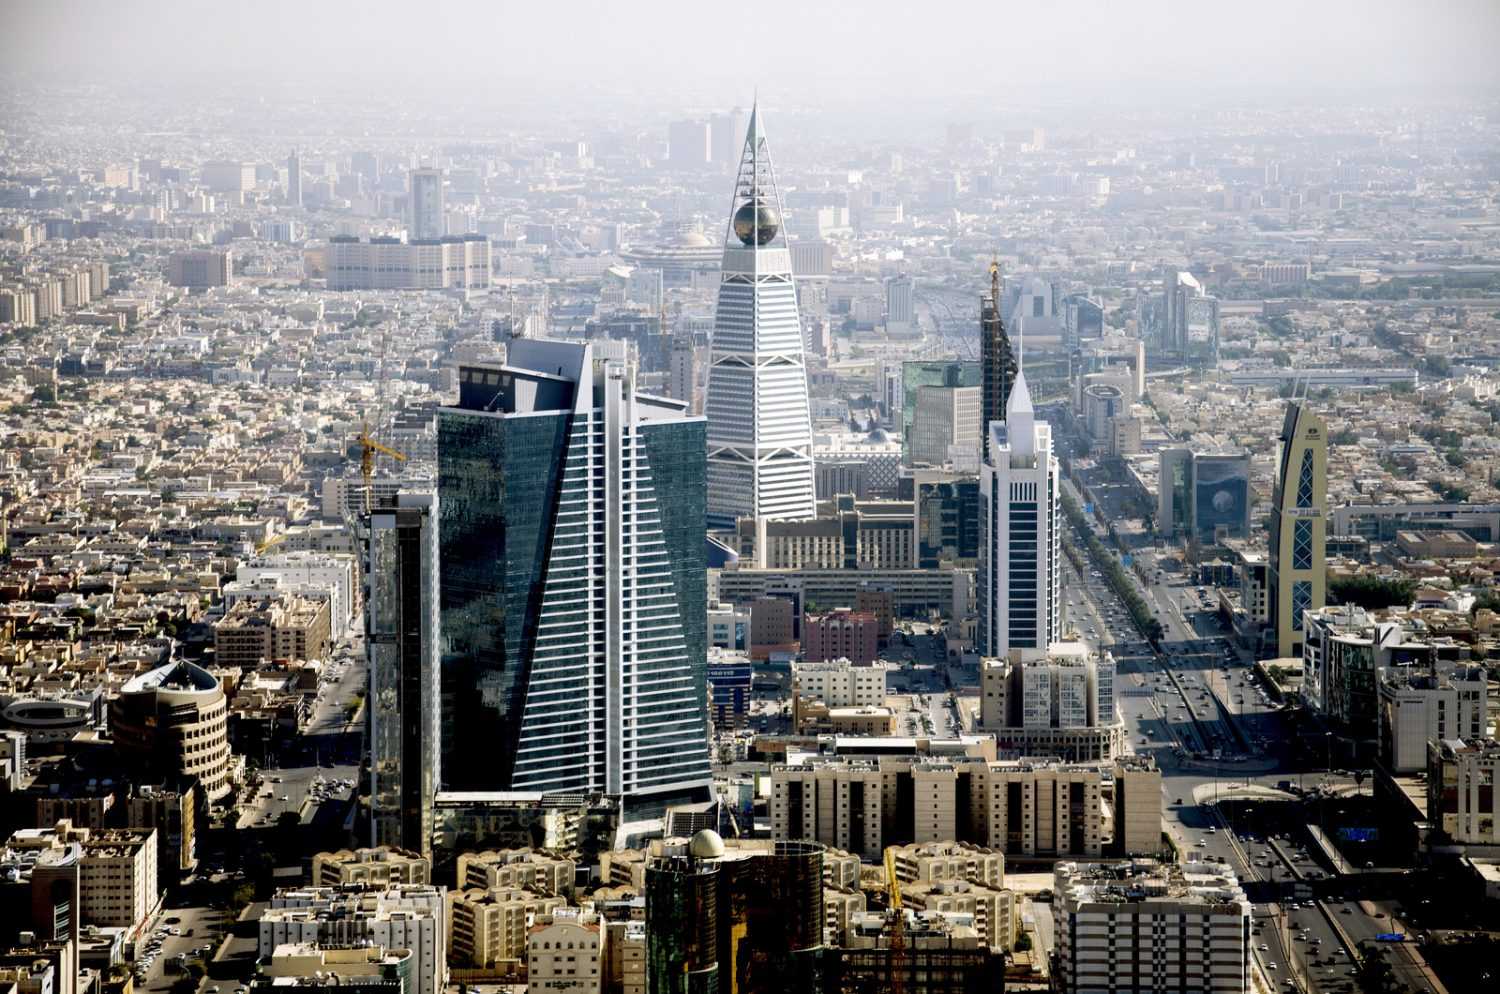 مدينة الرياض - استثمار - السياحة - عقار - مكاتب العقارات - الاستثمار العقاري